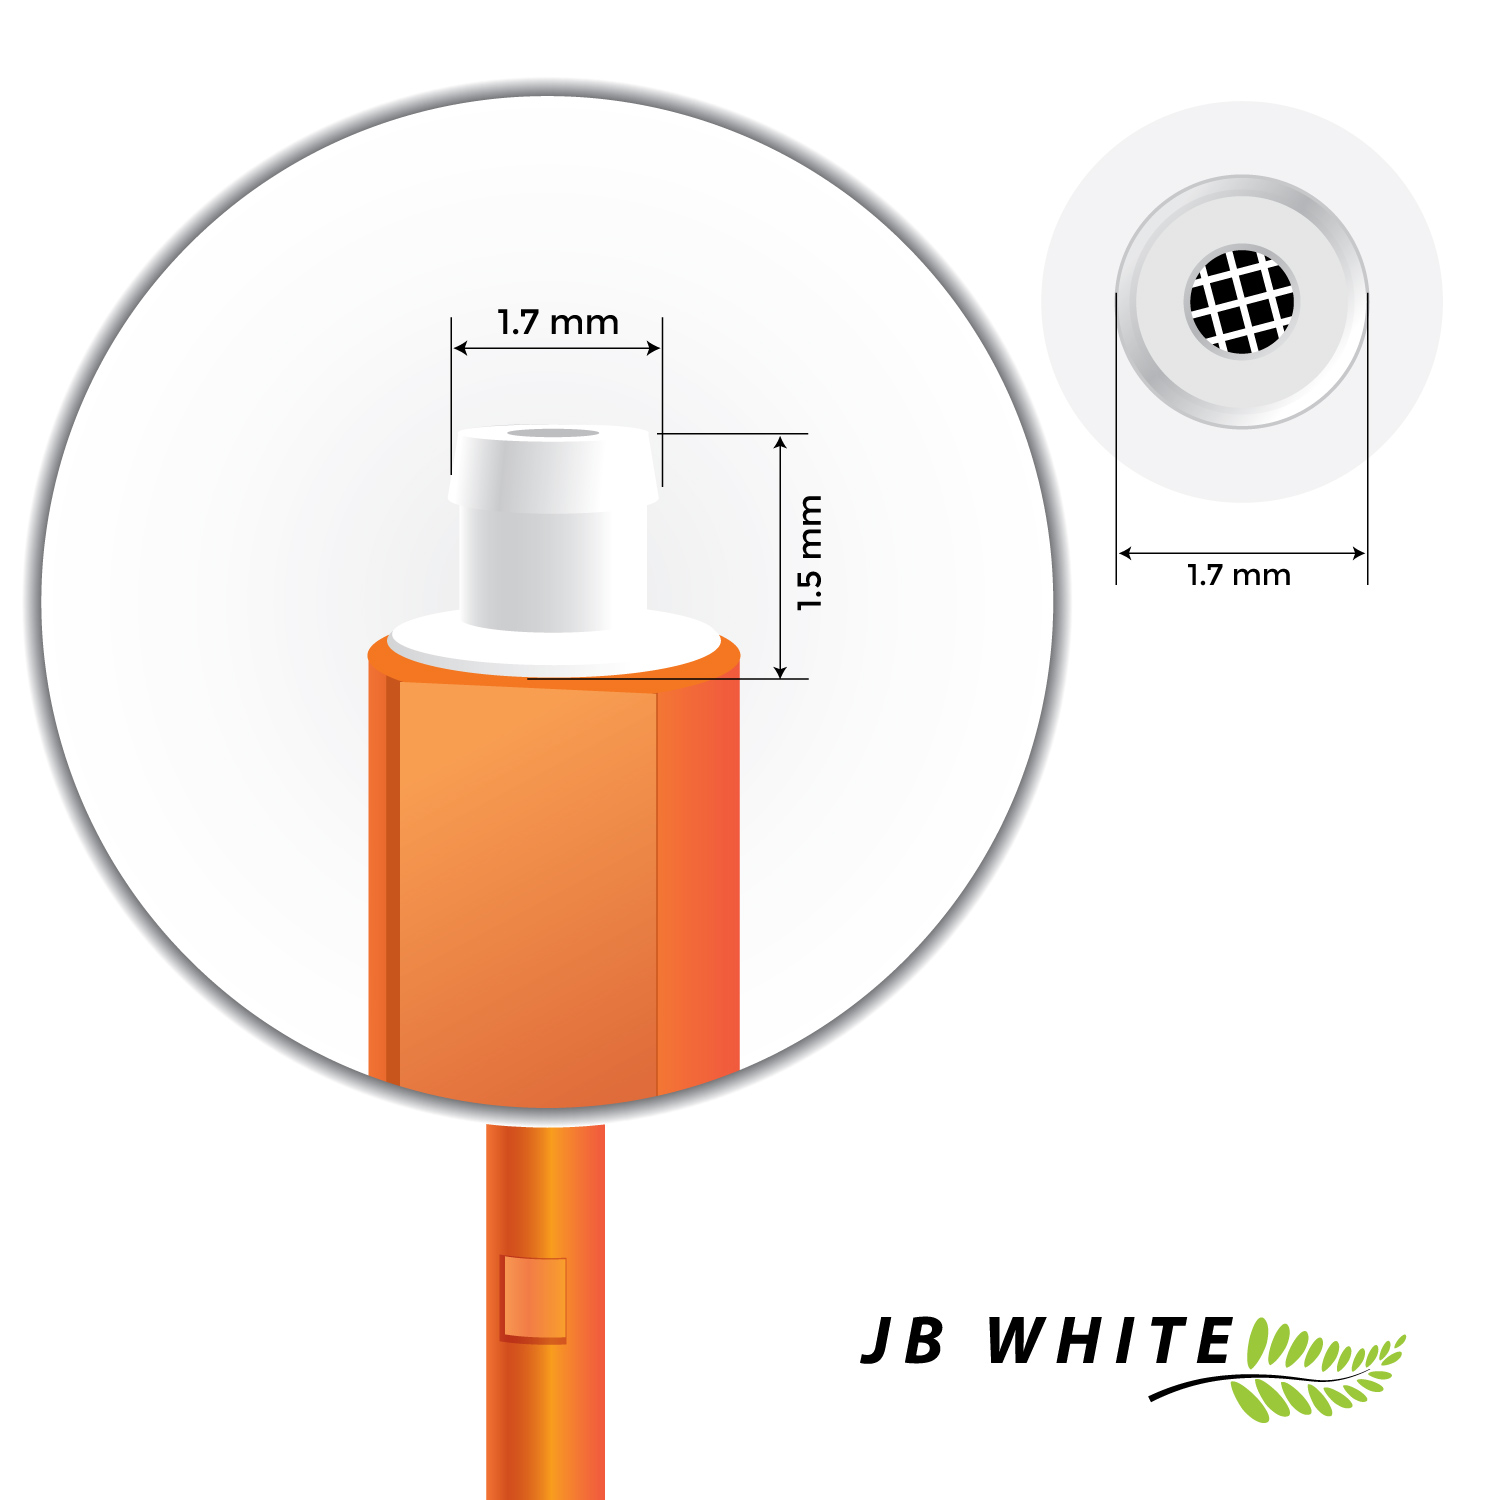 JB WHITE 32x mm Hörgeräte Starkey Clear / evo Hörgeräte für x KIND (1,5 messen) Cerumenfilter evoR Hear 1,7 Cerumenfilter bitte und - für